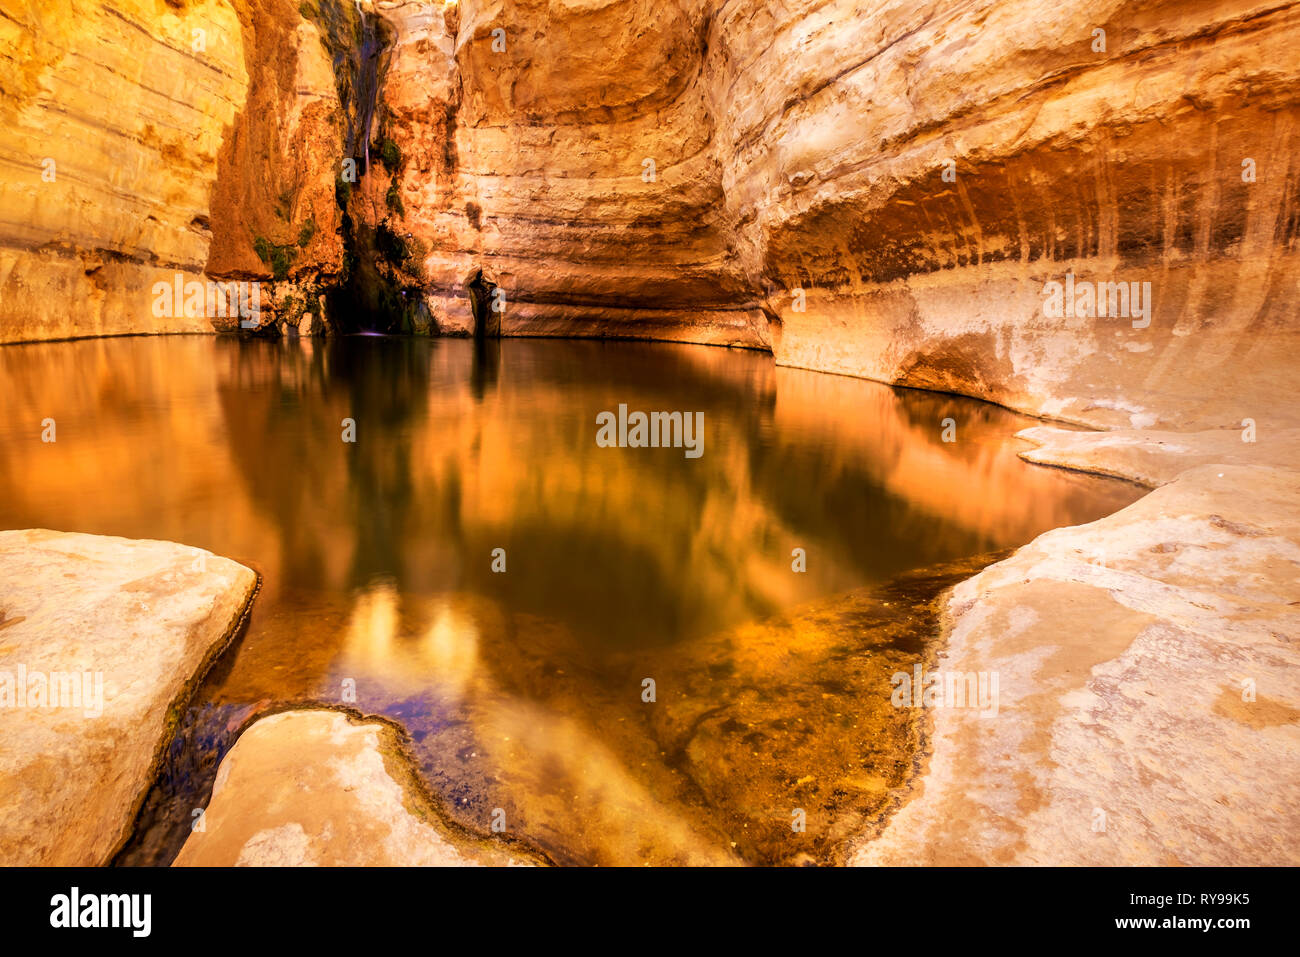 Lunga exepuser di acqua verso il basso nel canyon, Ein Ovdat riserva naturale, Israele Foto Stock